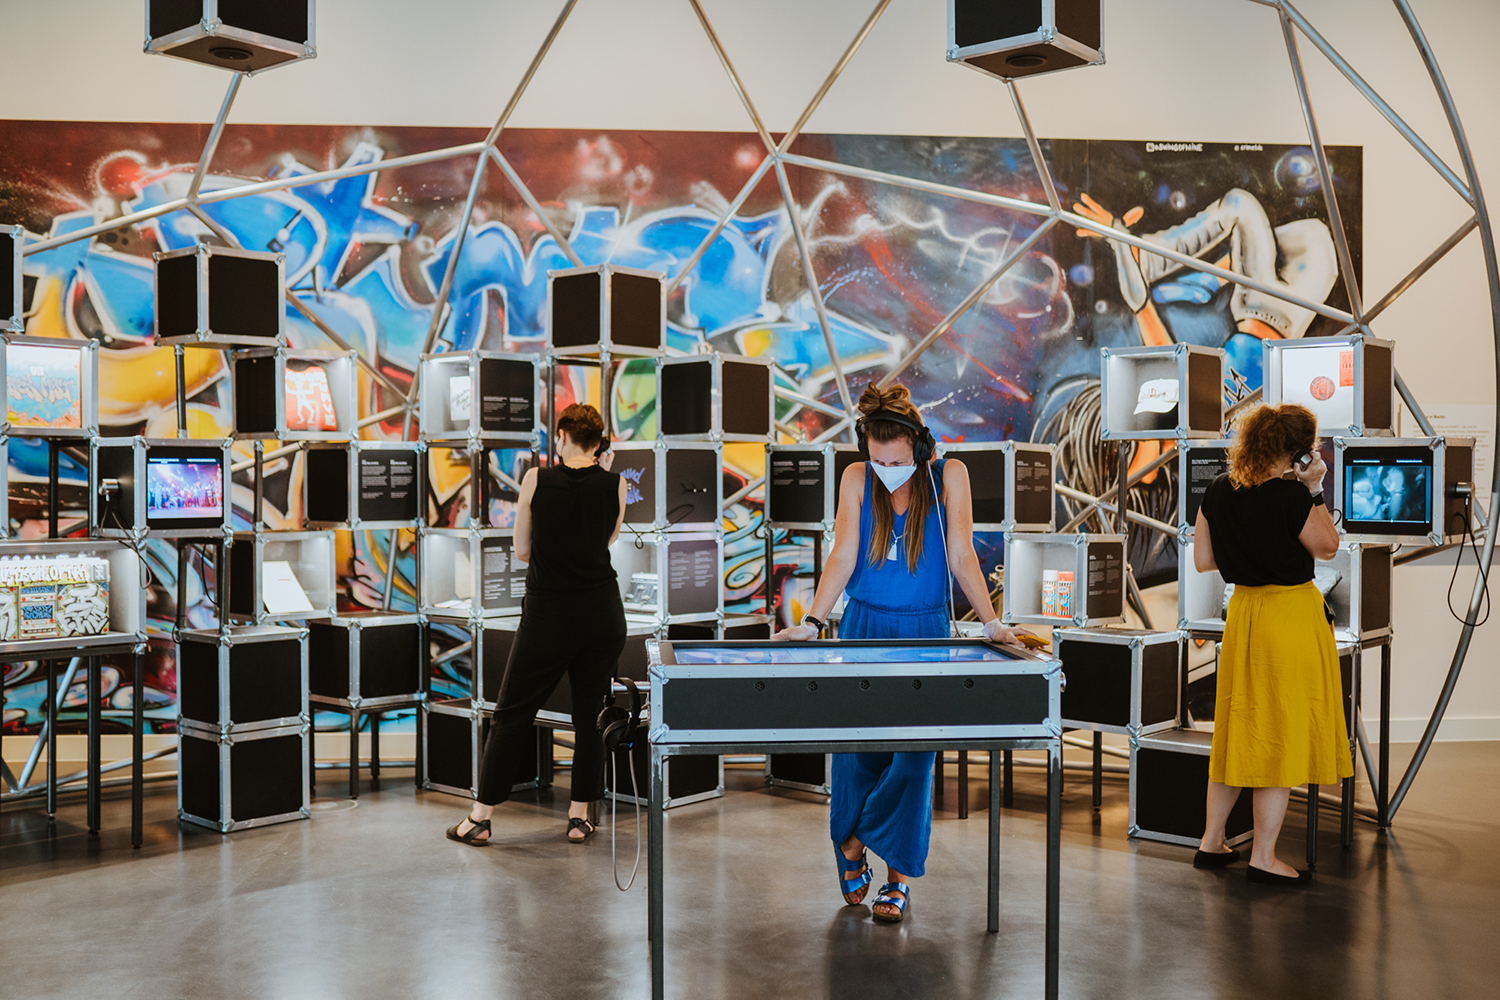 Die HipHop-Station ist eine der vielen interaktiven Stationen der Ausstellung "Berlin Global" im Humboldt Forum. Foto: Oana Popa Costea